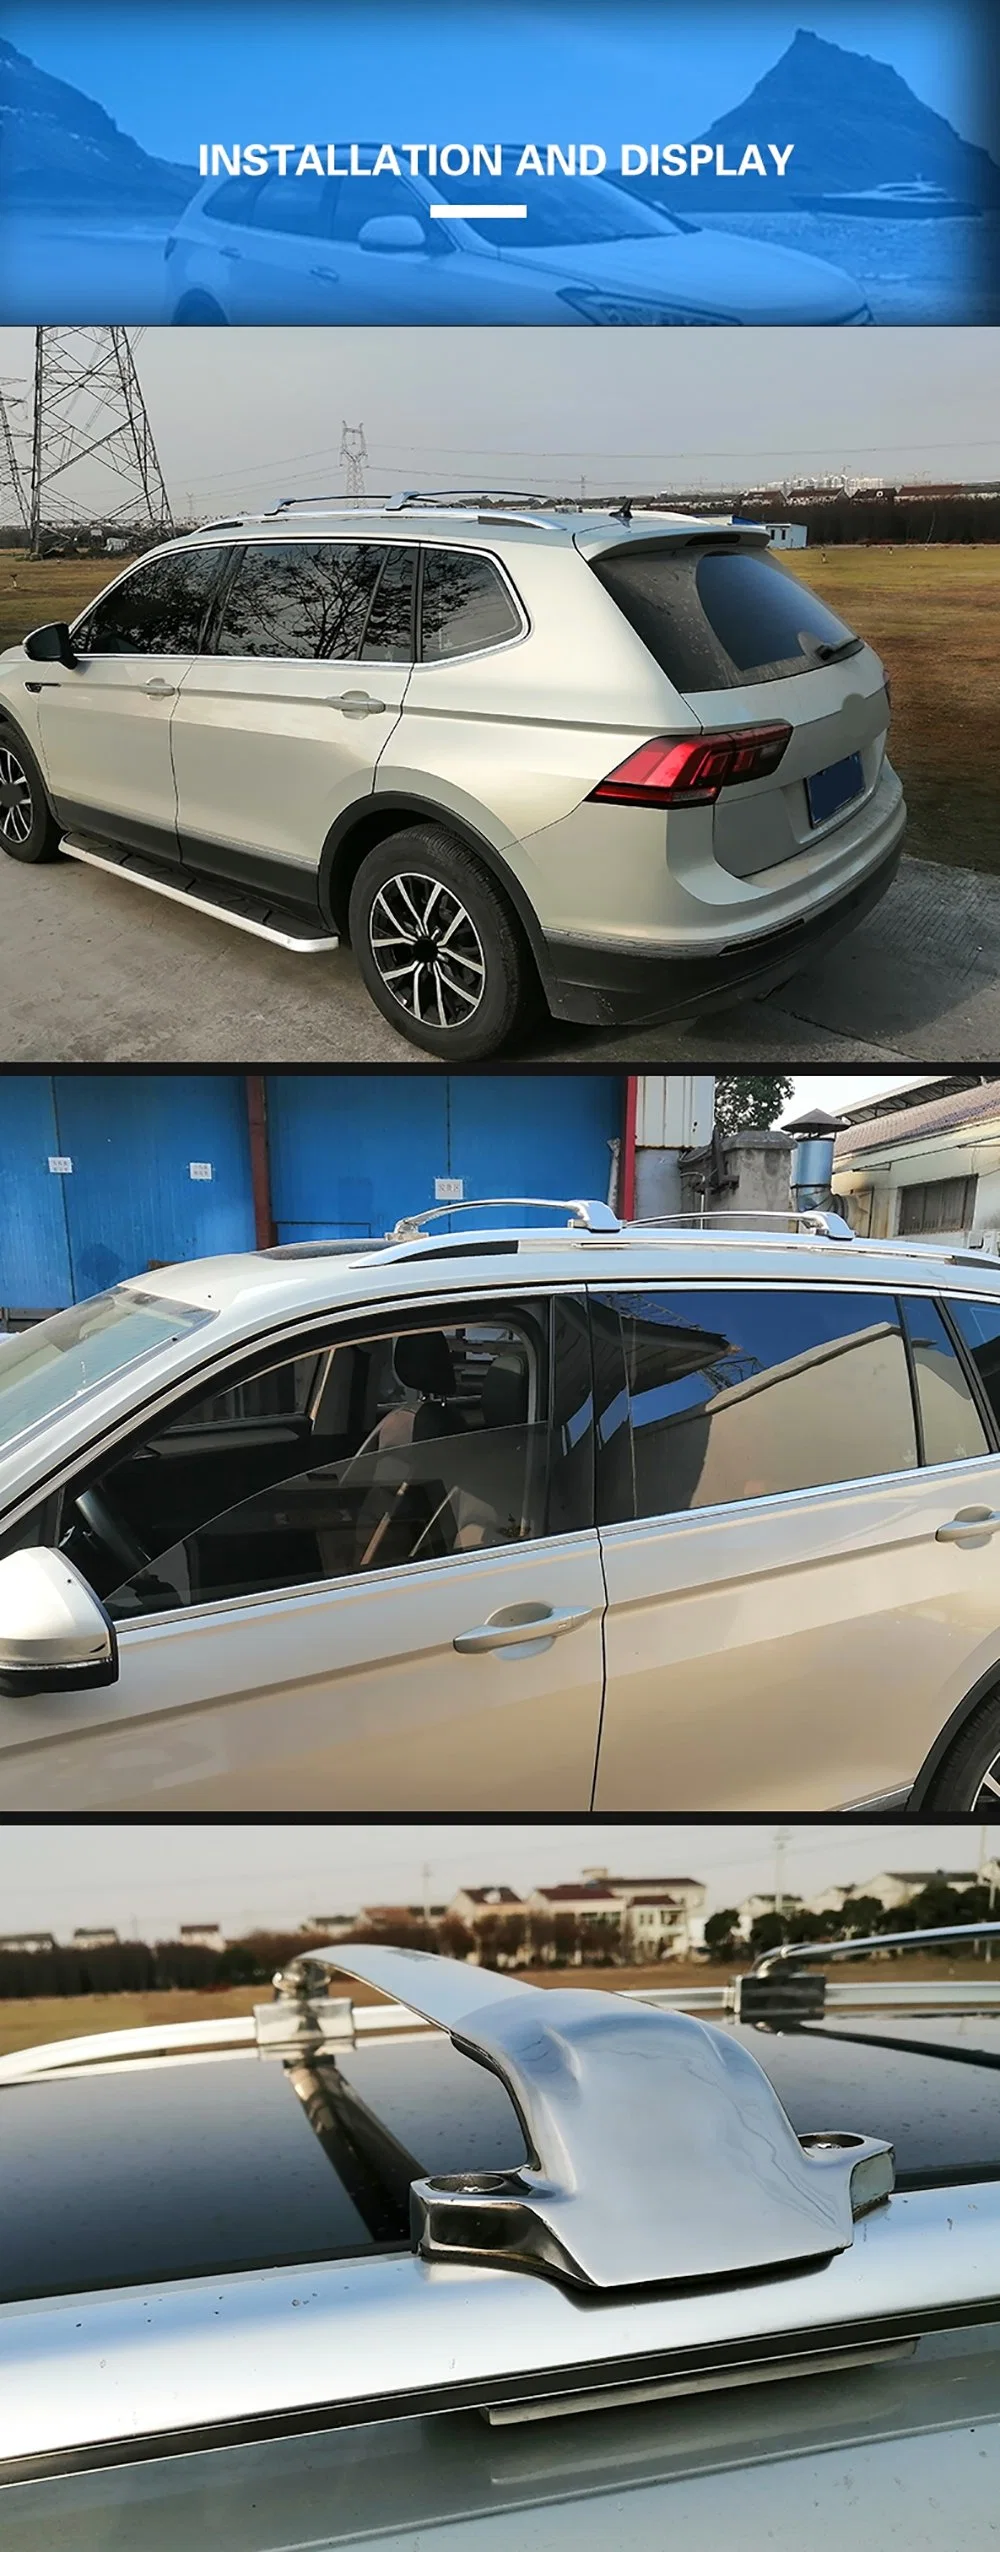 for Toyota Prado 2010 2011 2012 2013 2014 2015 2016 2017 2018 2019 Car Roof Rack